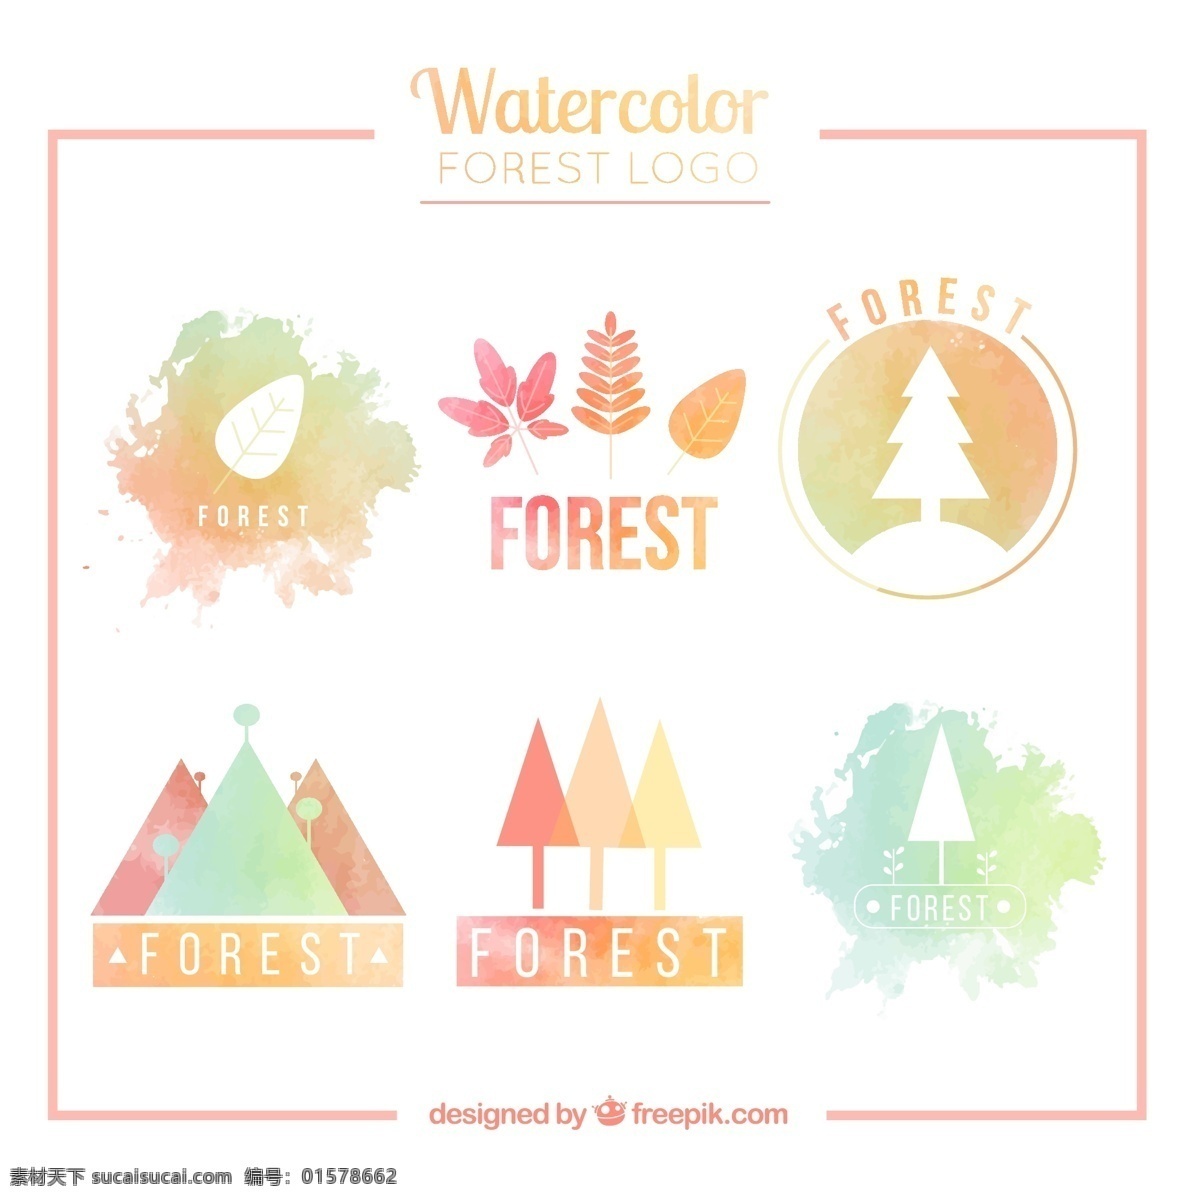 款 水彩 绘 森林 标志 矢量 水彩绘 树木 大树 手绘 创意 图标